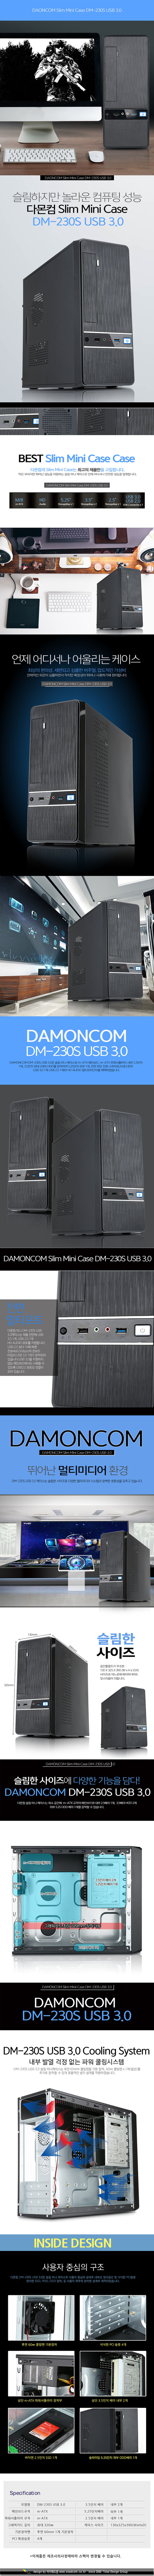 DM-230S+%25BA%25ED%25B7%25A2+USB+3_0.jpg